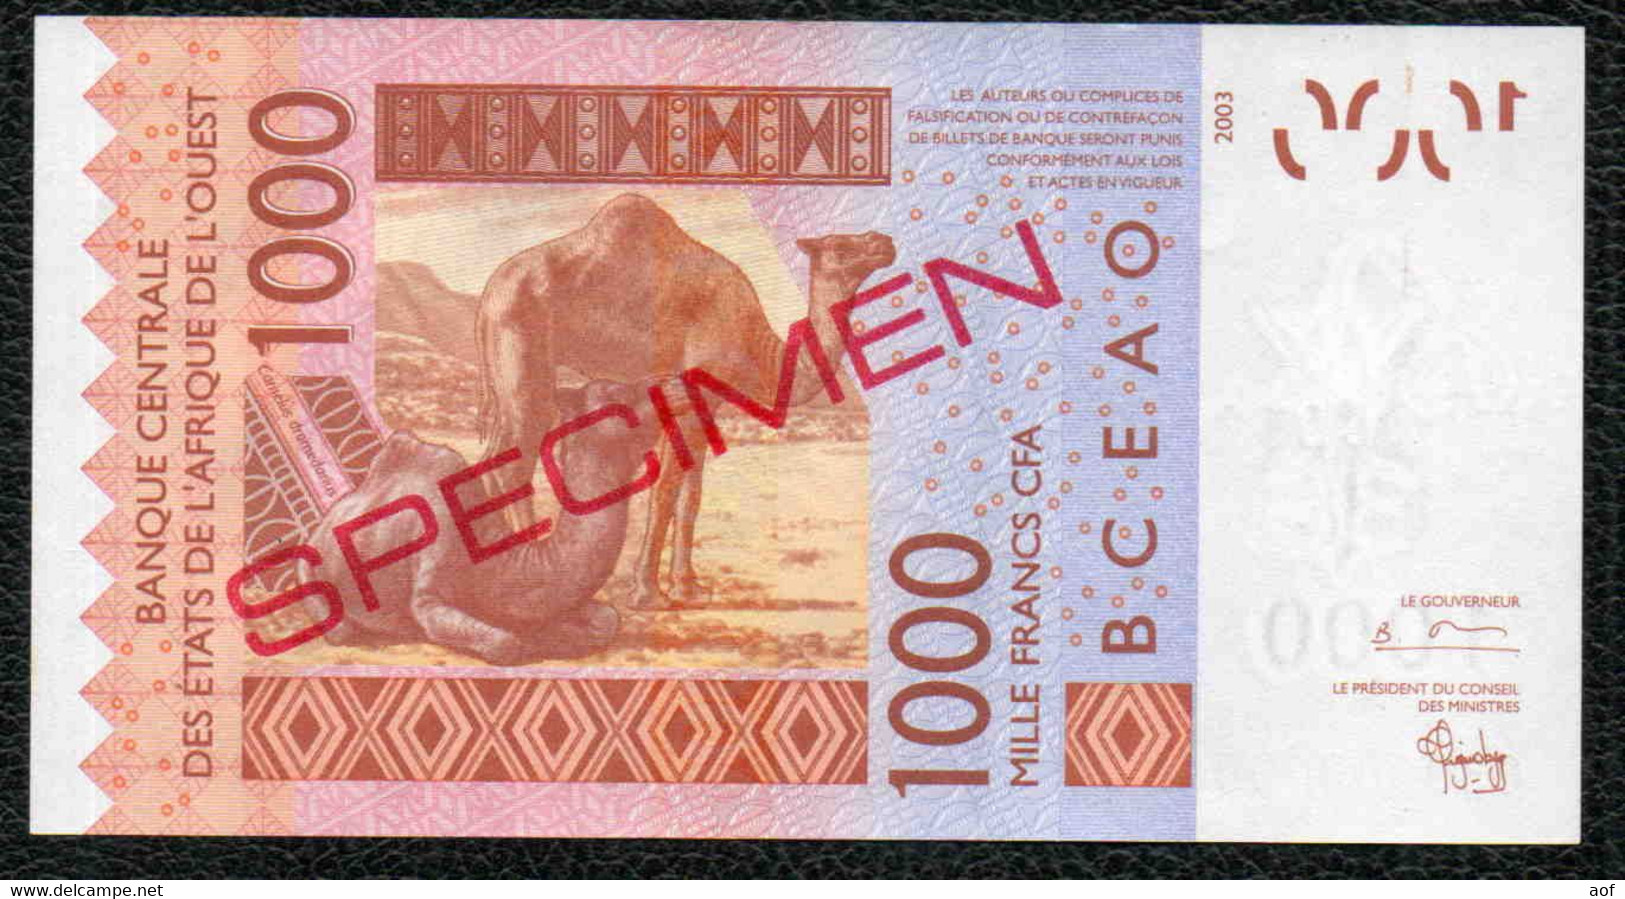 1000F CFA Spécimen BENIN - Bénin